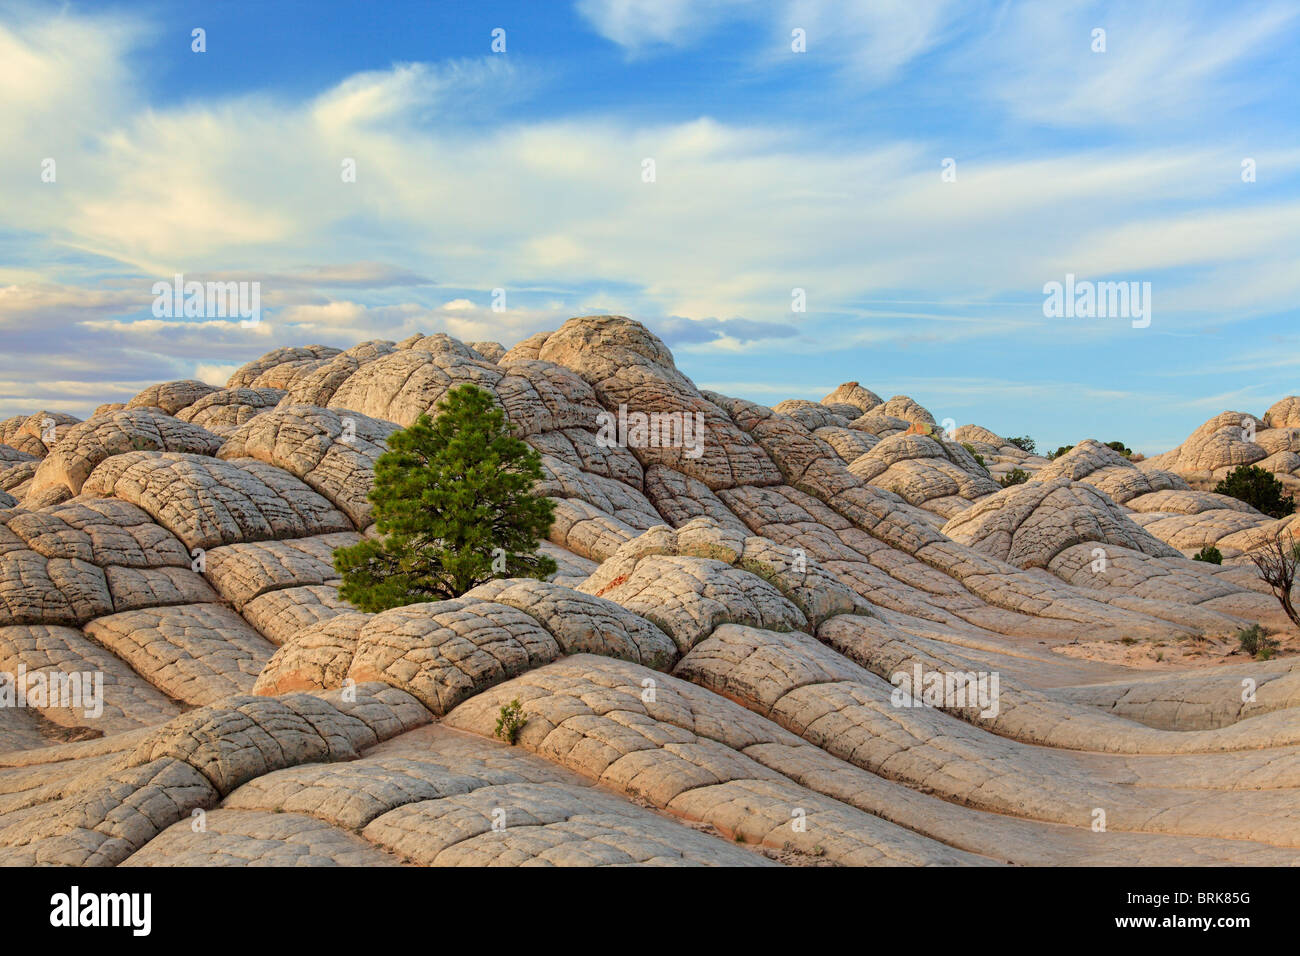 Rock formations dans le Livre blanc de l'unité de poche Vermilion Cliffs National Monument, Arizona Banque D'Images